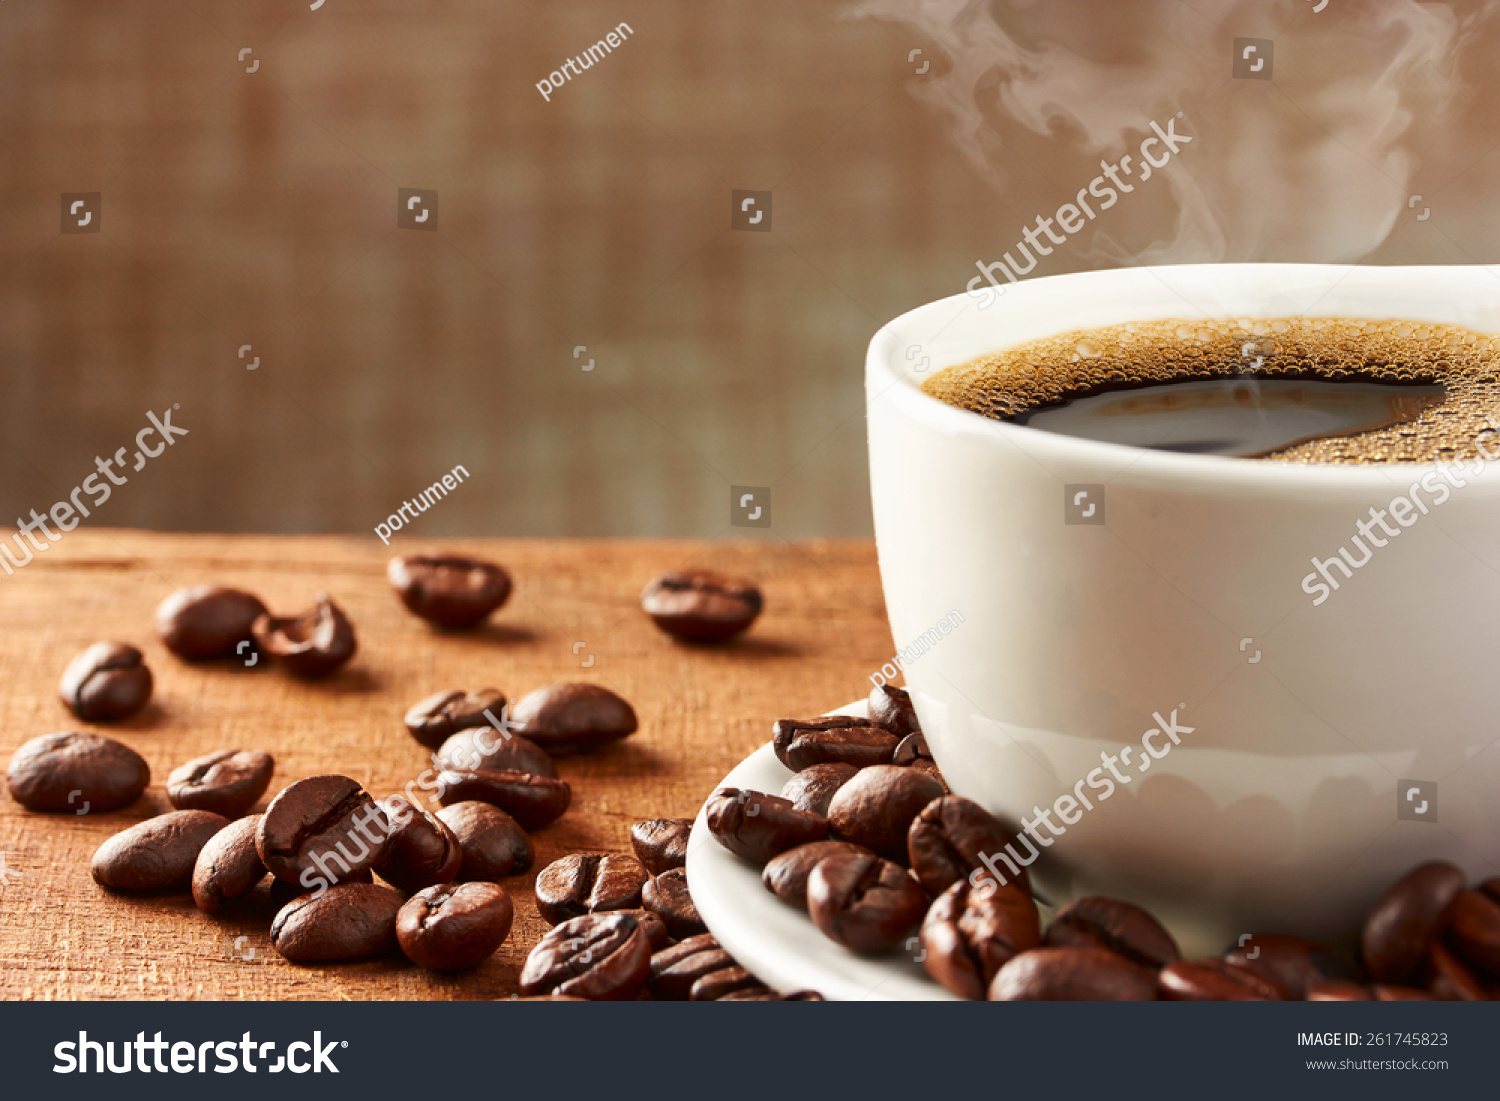 壁纸 茶 豆子 蜂蜜 咖啡 奶茶 网 0_1